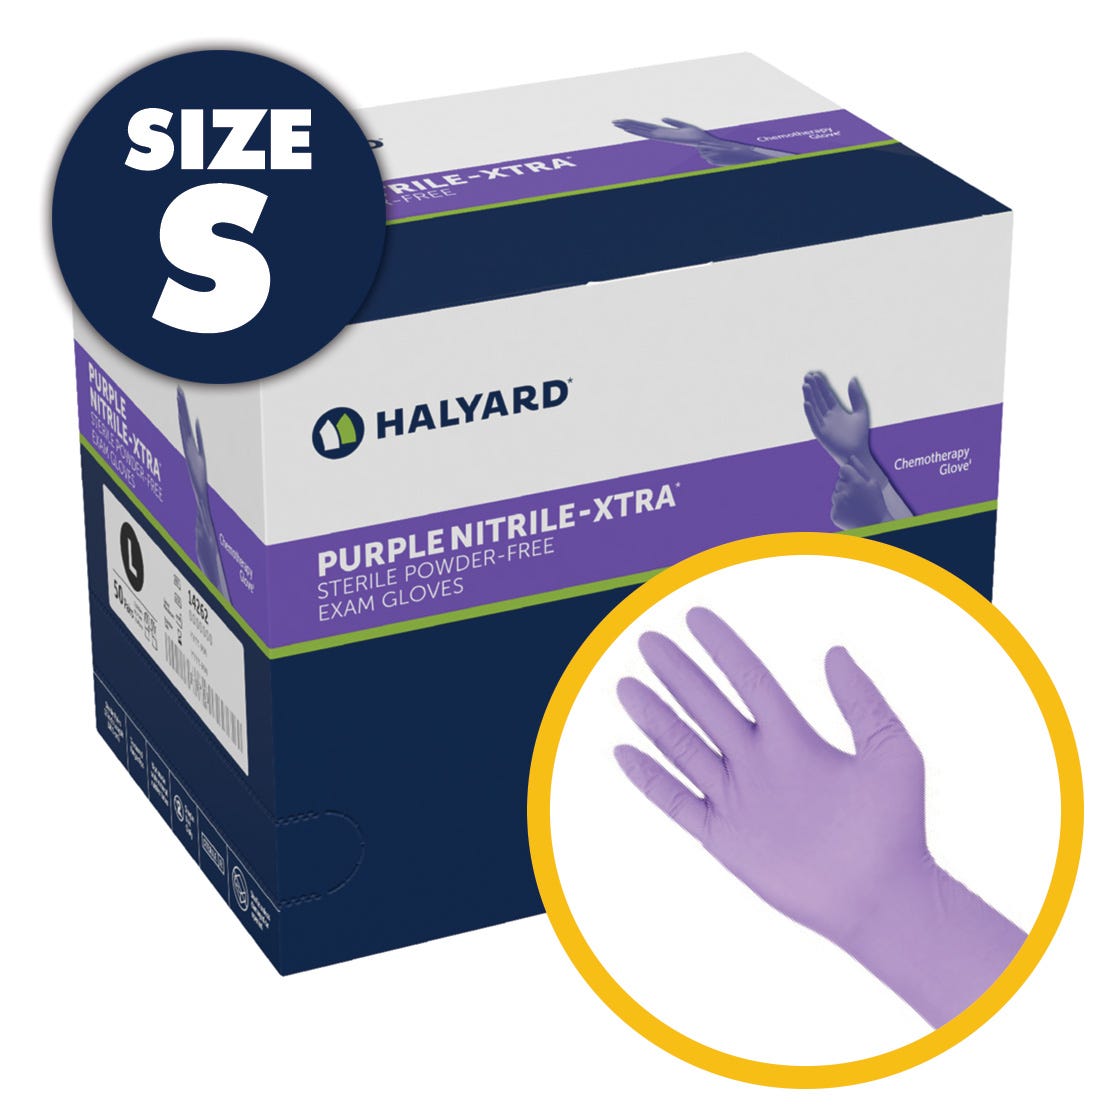 Purple Nitrile-XTRA Sterile Exam Gloves, Small, Powder Free, Latex Free, 50prs/Box